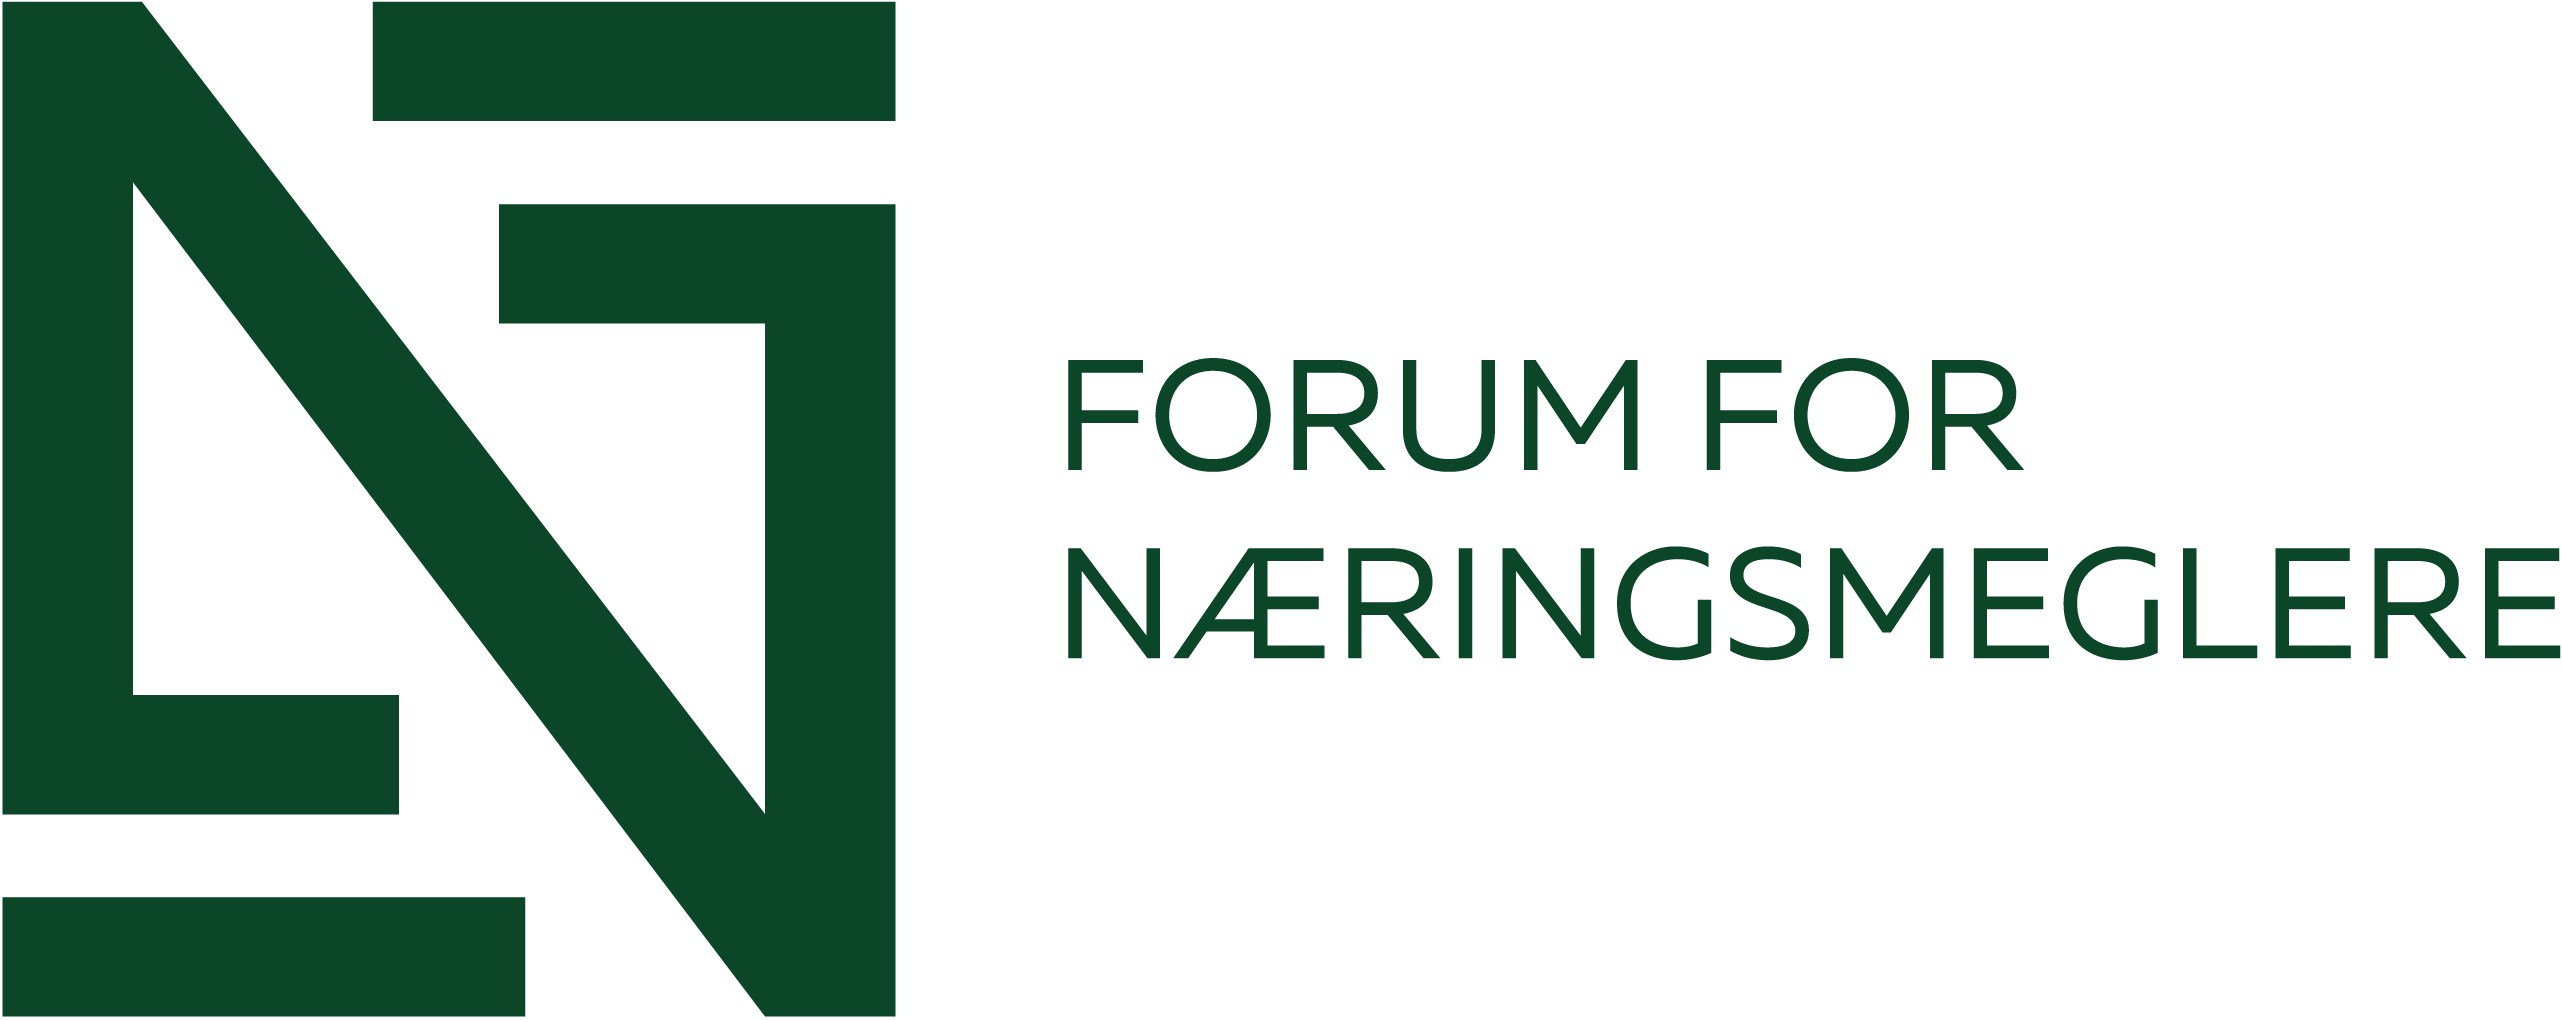 Forum for Næringsmeglere